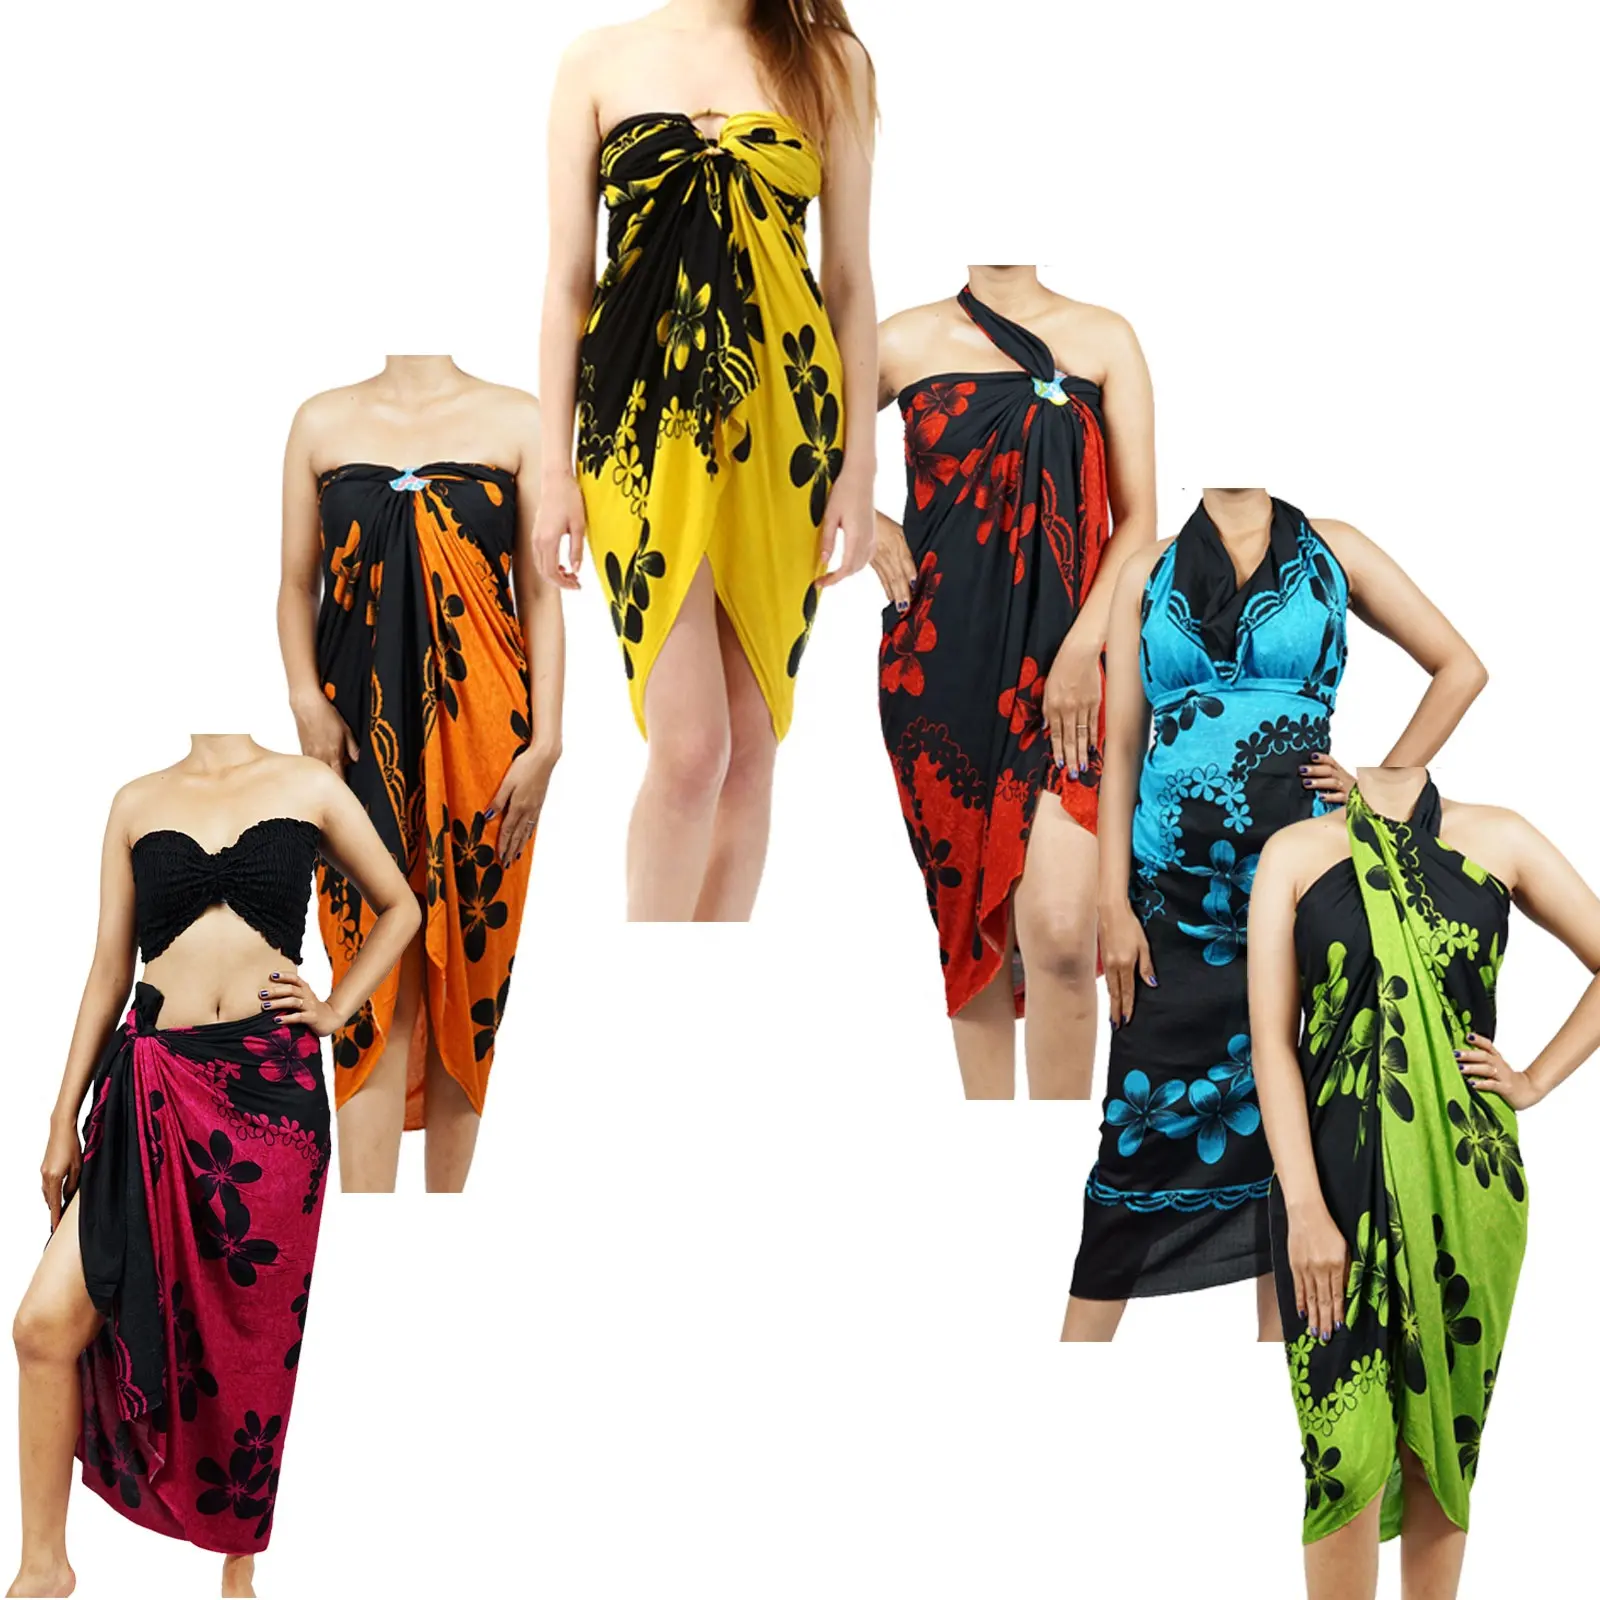 Thiết Kế Mới Nhất Floral Printed Pareo Bãi Biển Dress 100% Rayon Sarong Bikini Swimwear Bìa Lên Từ Indonesia